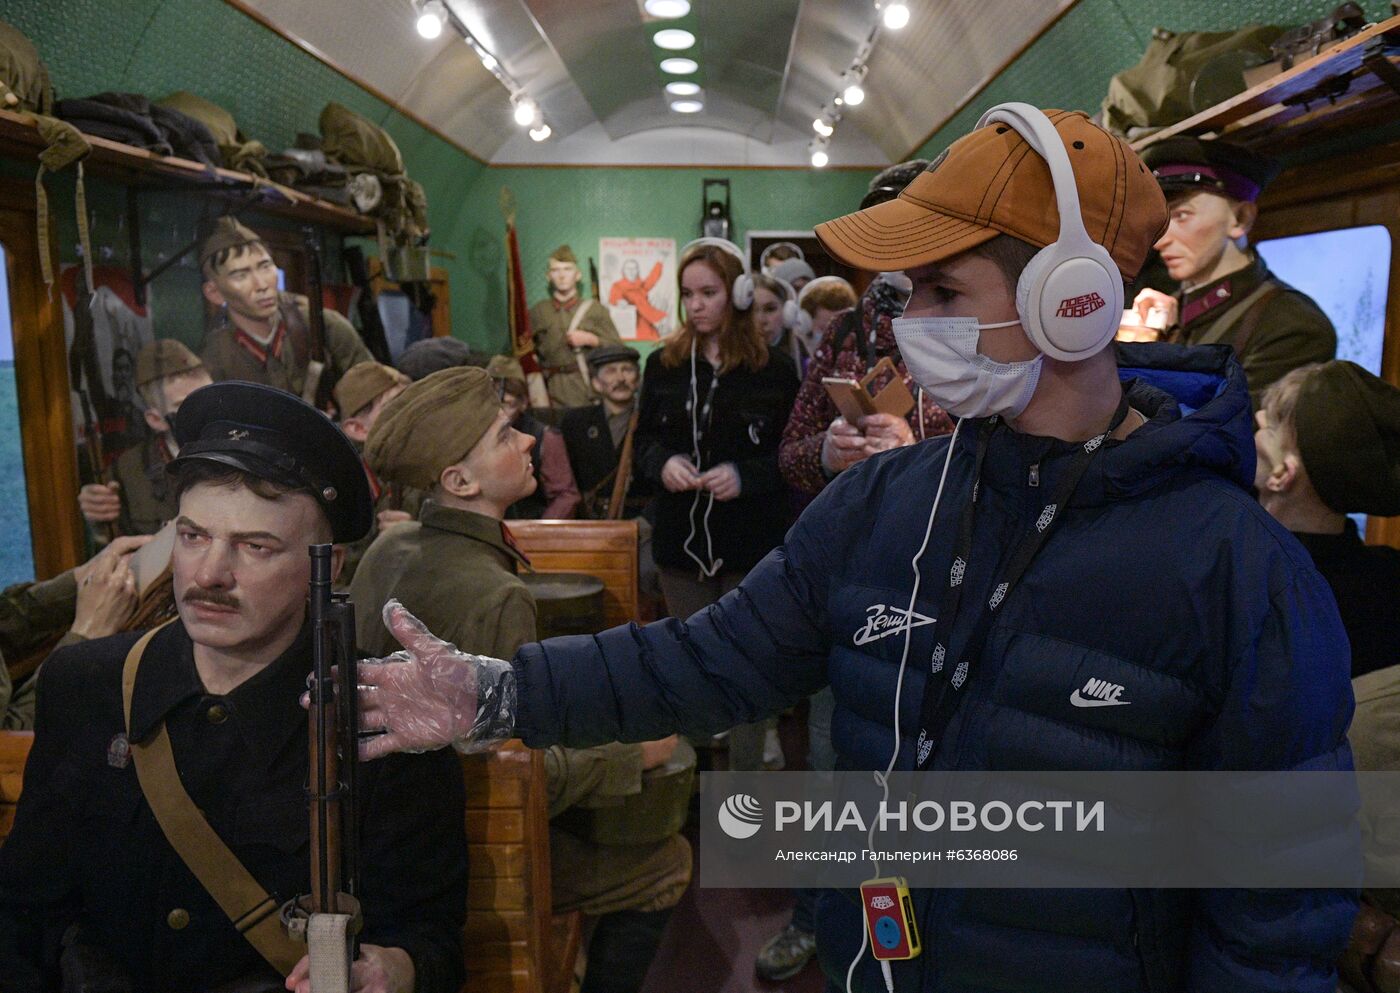 Передвижной музей "Поезд Победы" в Санкт-Петербурге